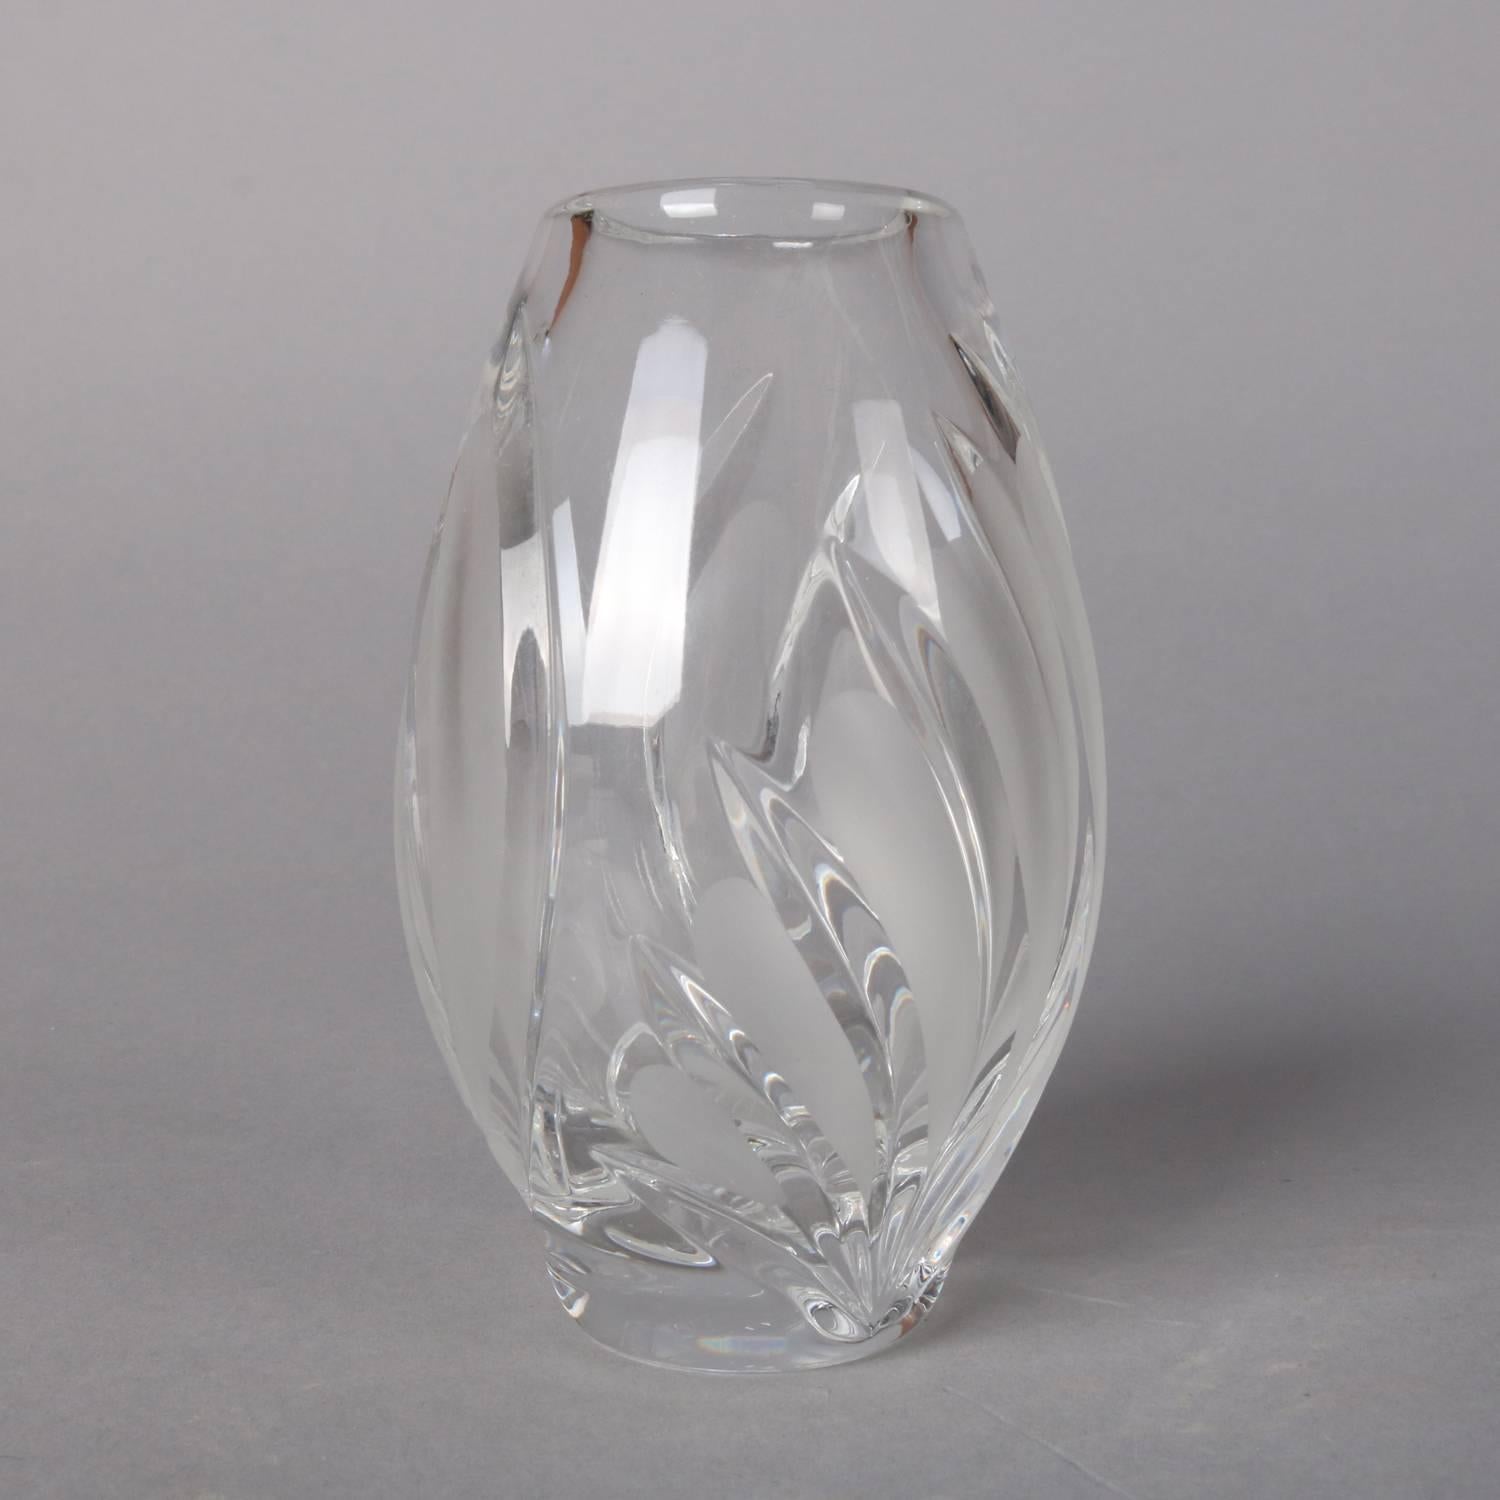 waterford marquis vase